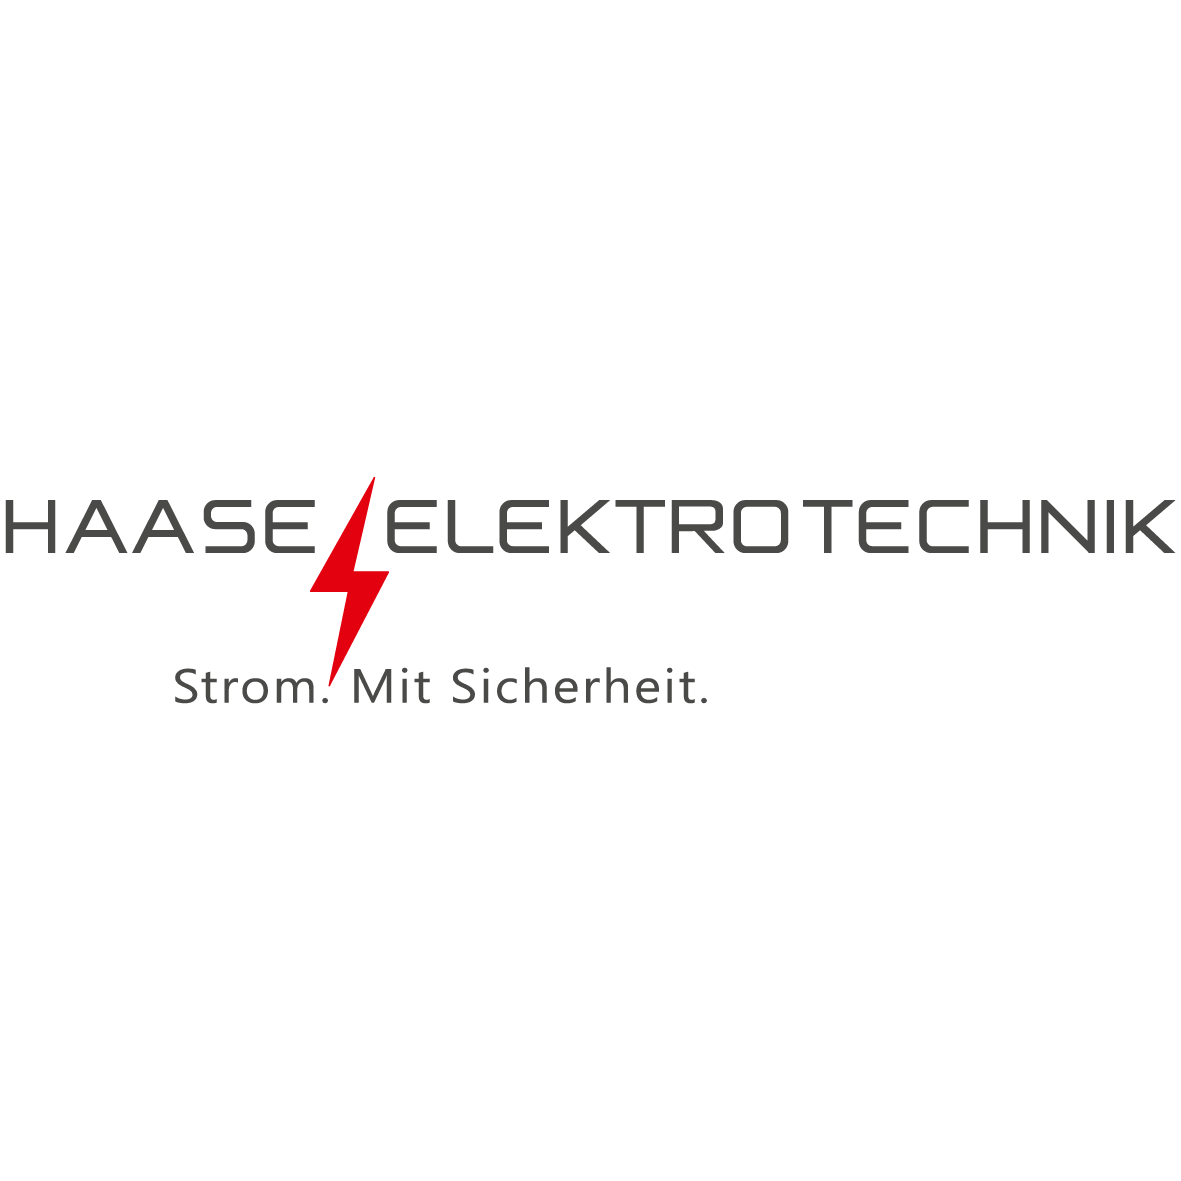 Haase Elektrotechnik